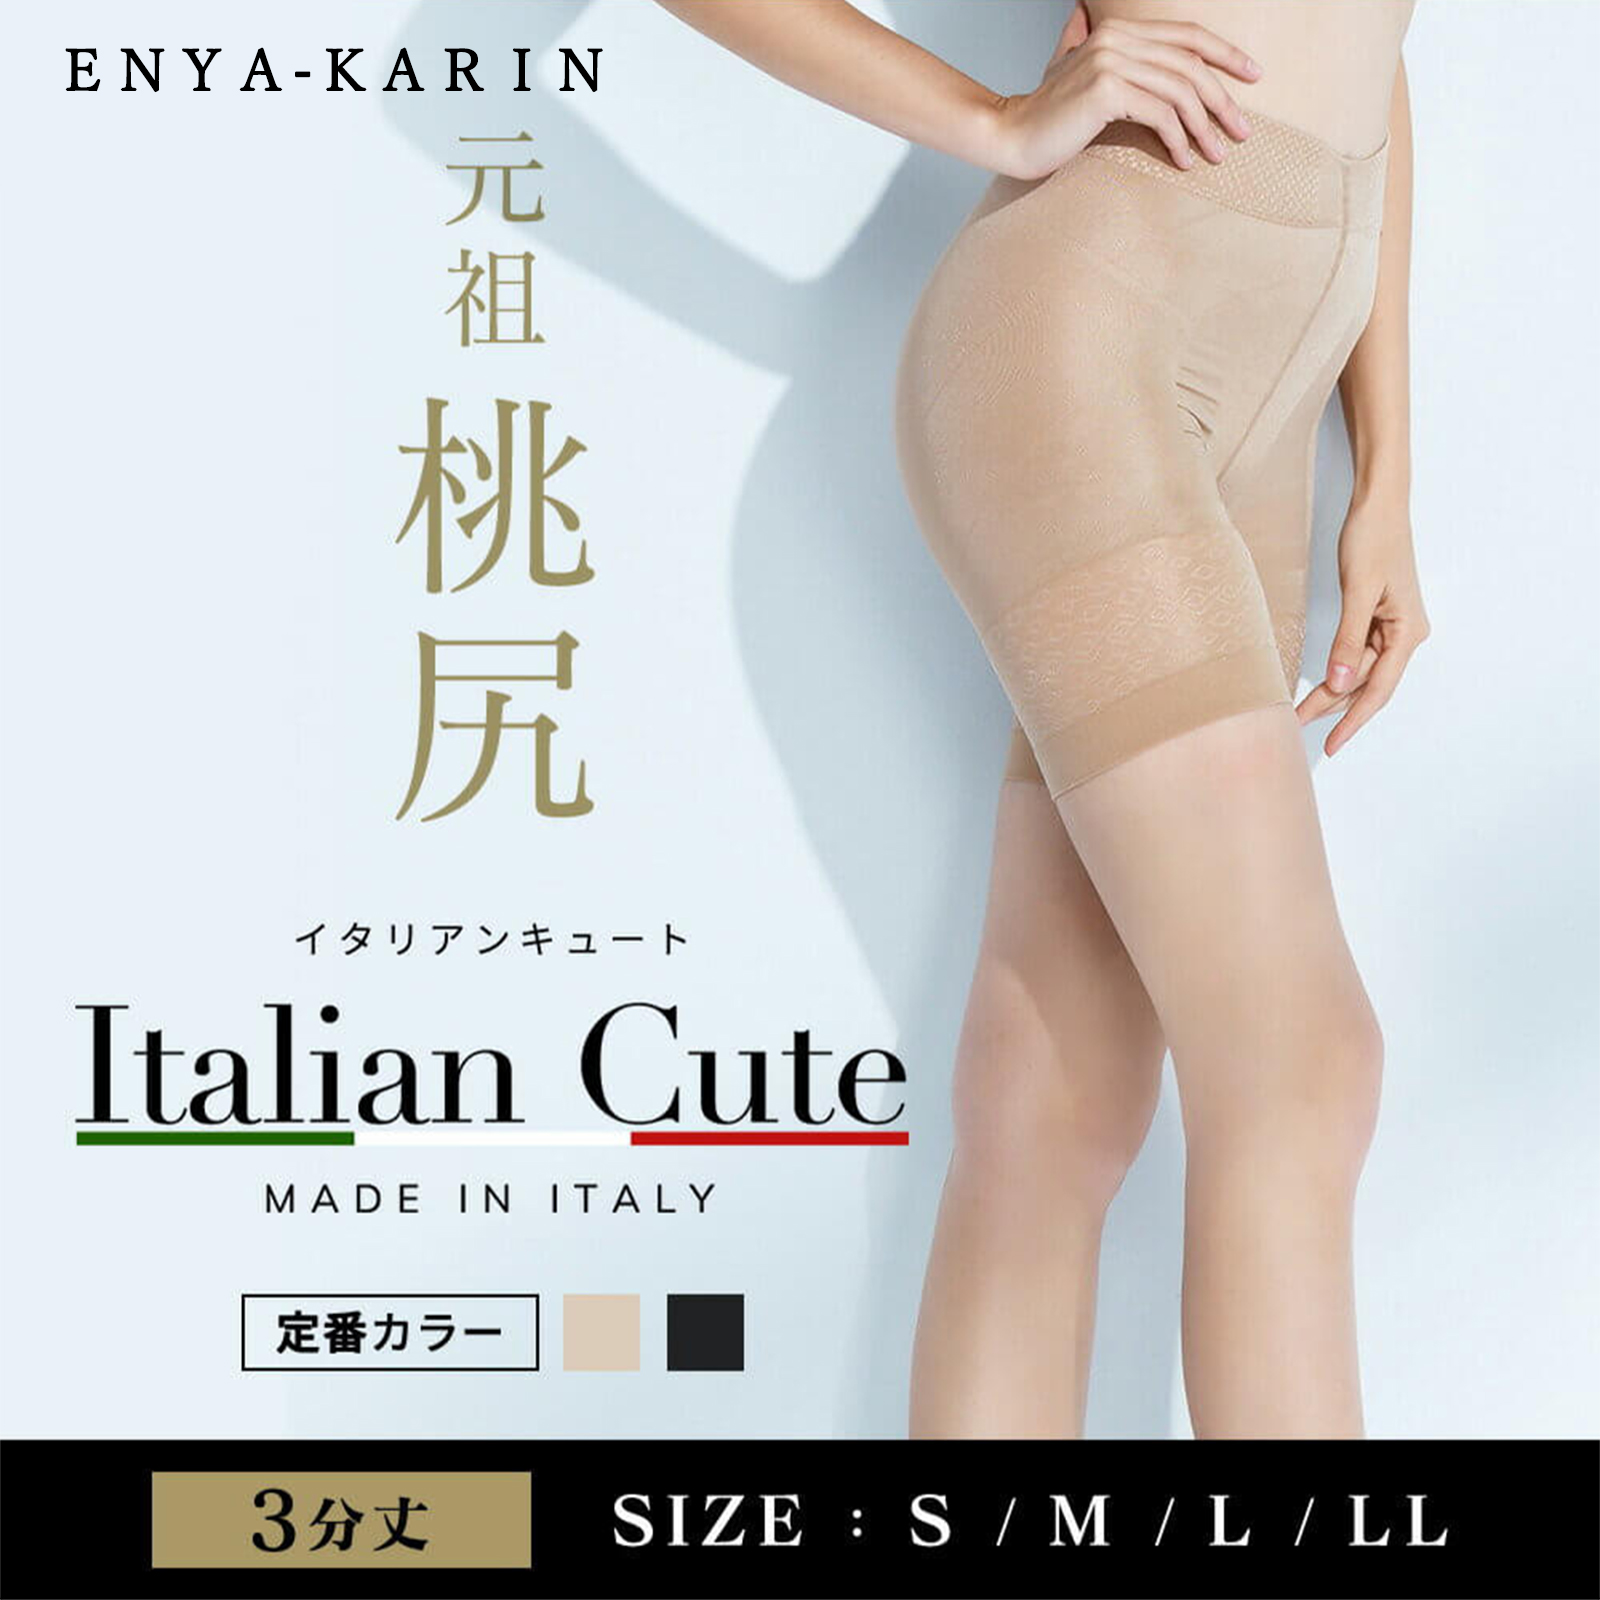 Italian Cute - イタリアンキュート 3分丈パンティガードル